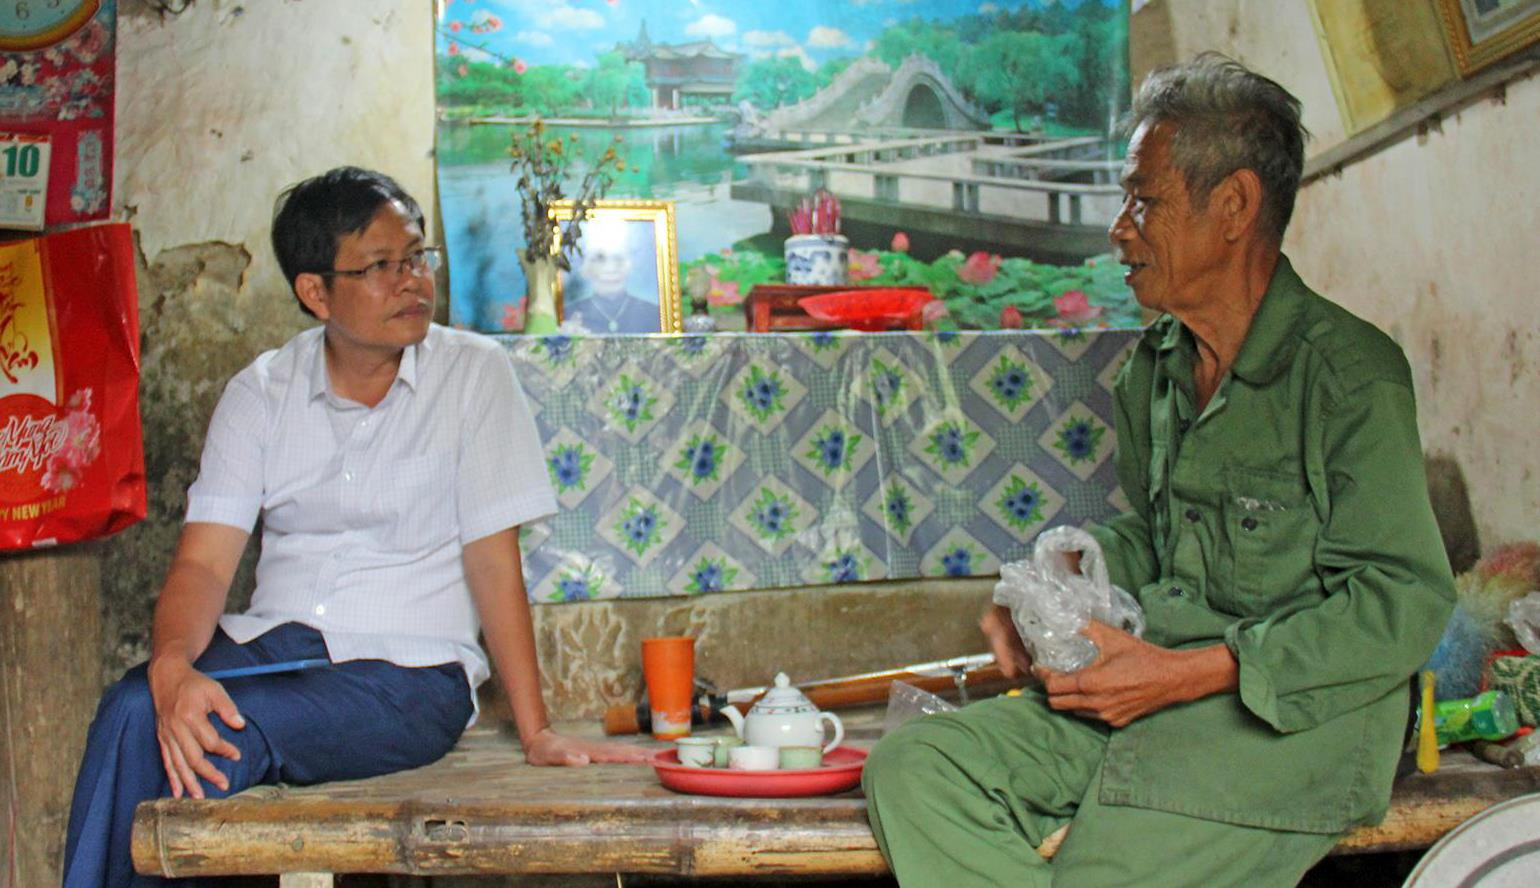 Đồng chí Nguyễn Anh Văn - Trưởng ban Tuyên giáo Thị ủy Hoàng Mai (trái) tìm hiểu thực tế tại cơ sở. Ảnh tư liệu